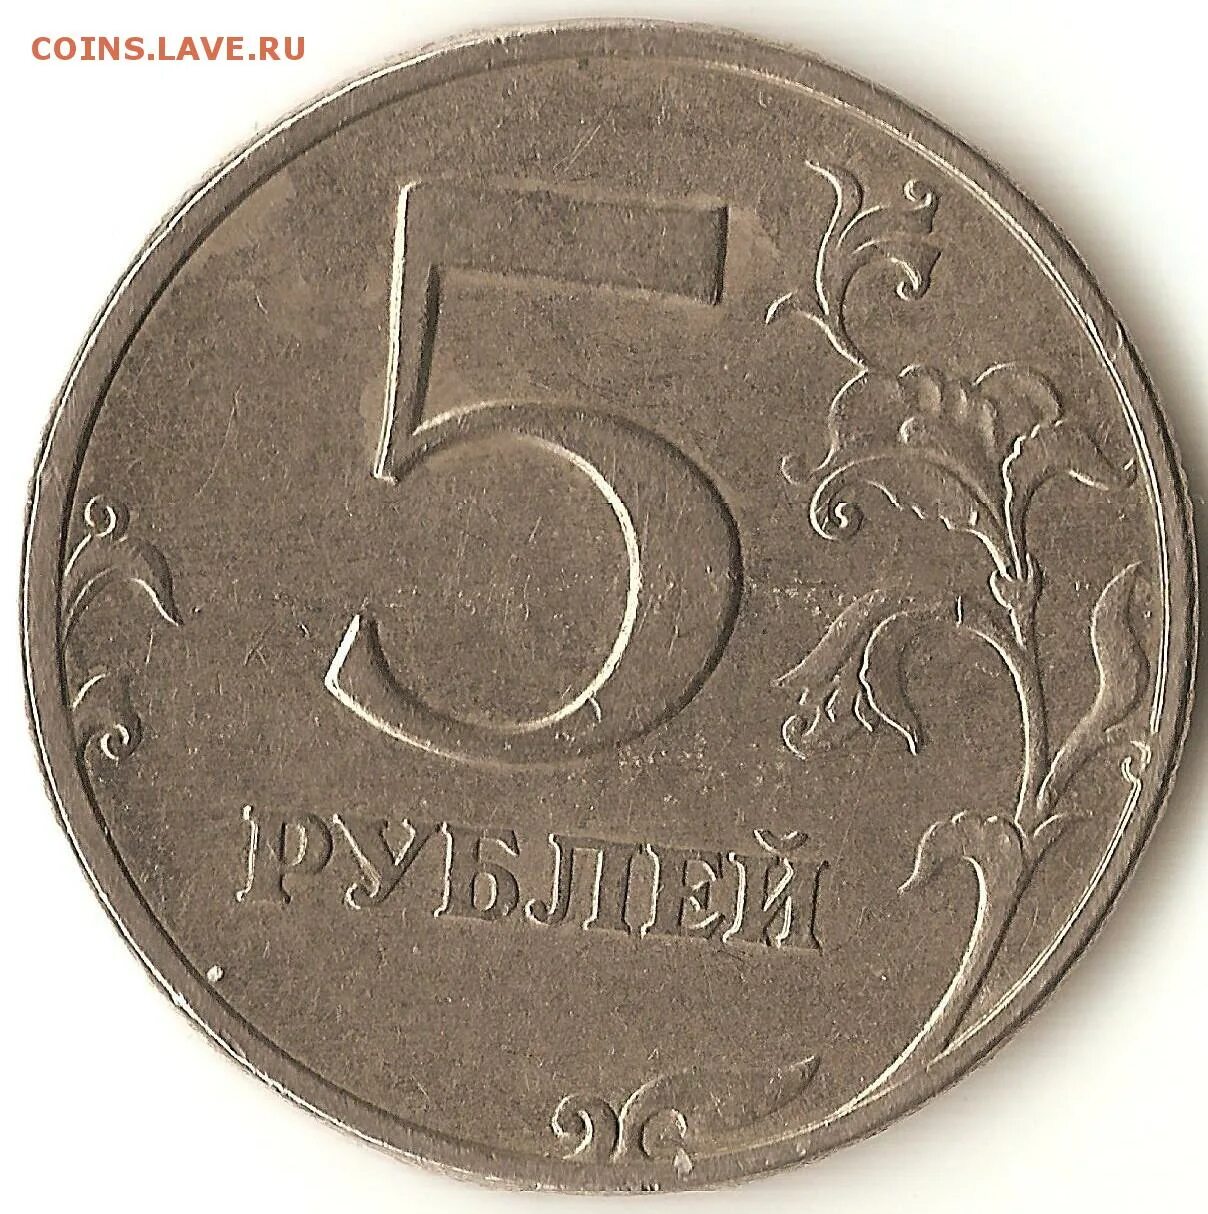 Монеты 1 2 5 рублей. Монеты достоинством 1. Монеты 1 и 2 рубля. Монета достоинством 1 рубль.